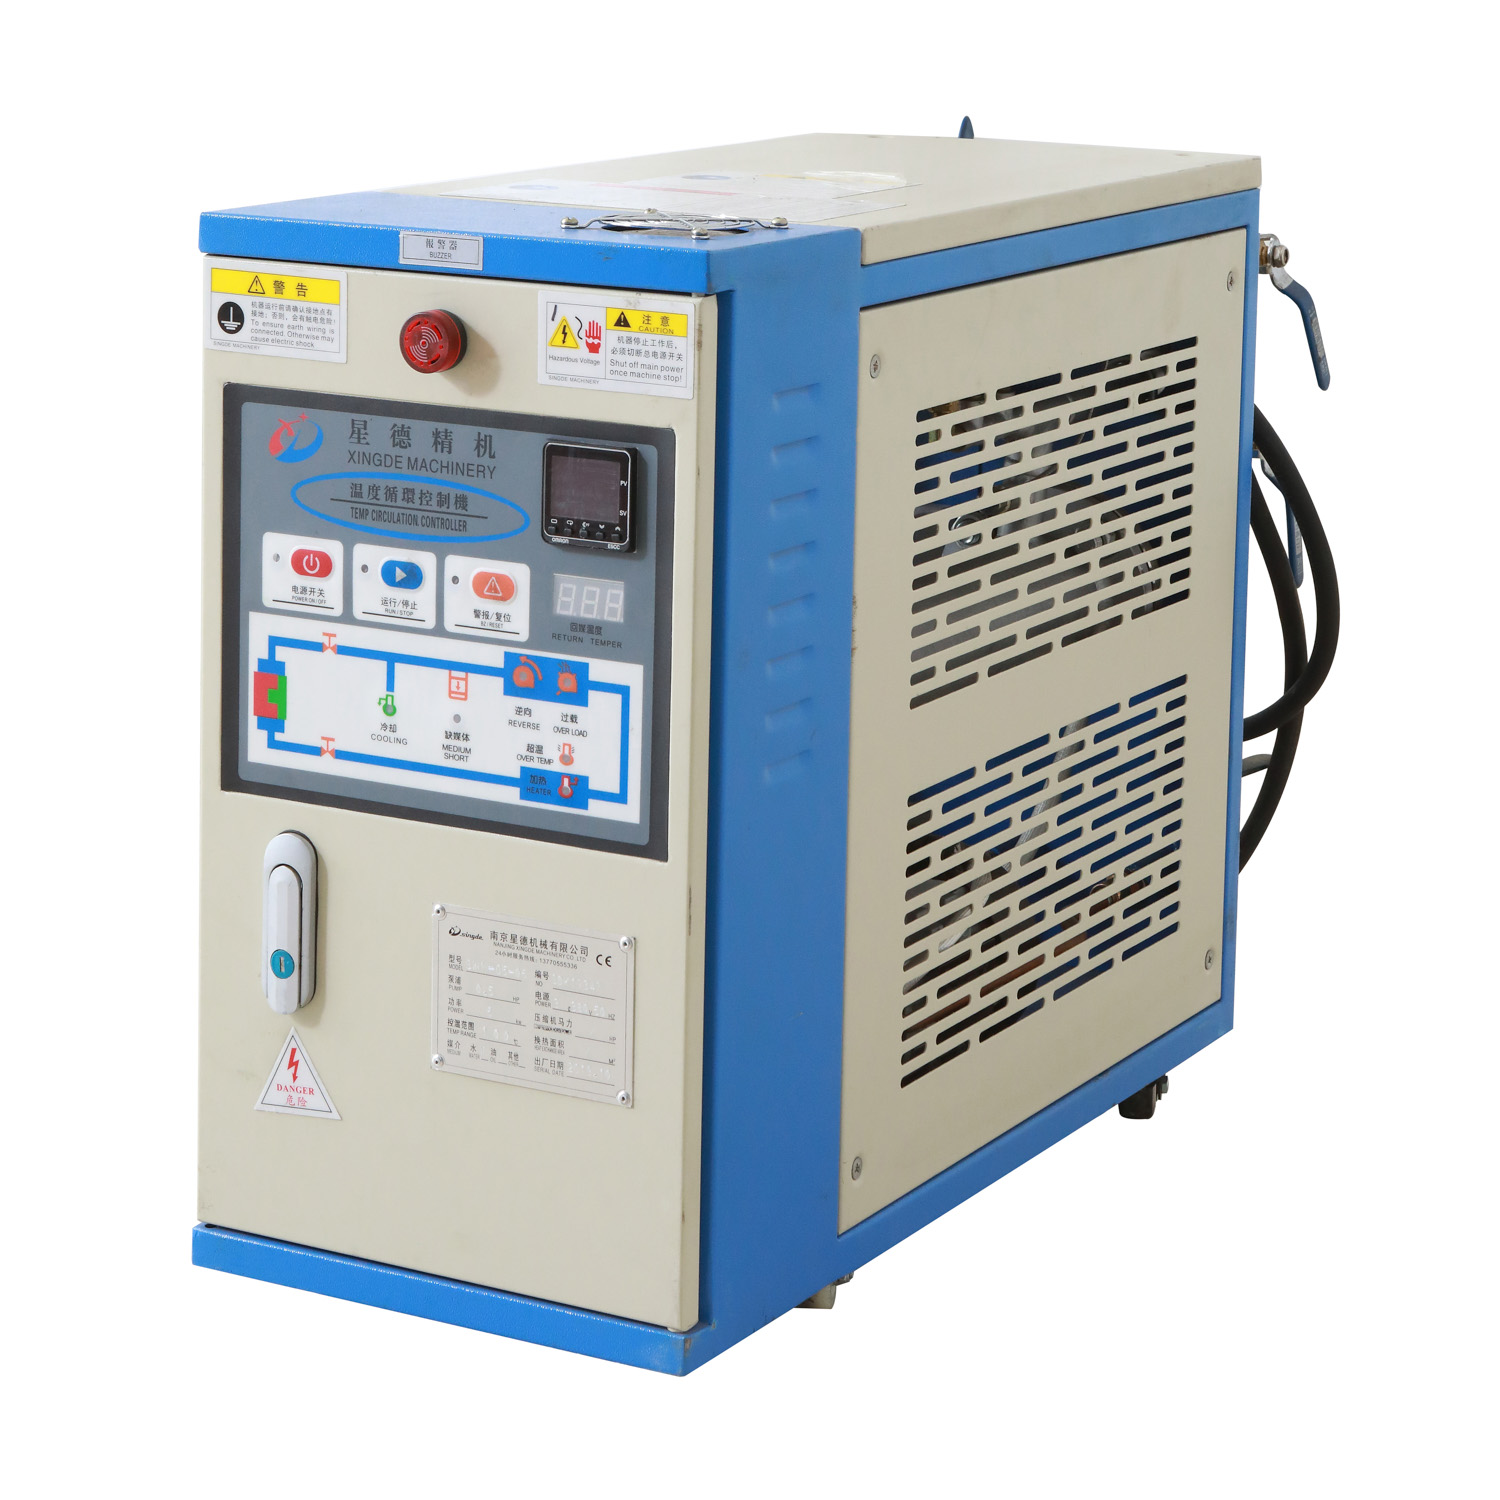 辽宁锦州模温机冷却系统厂家南京星德机械有限公司